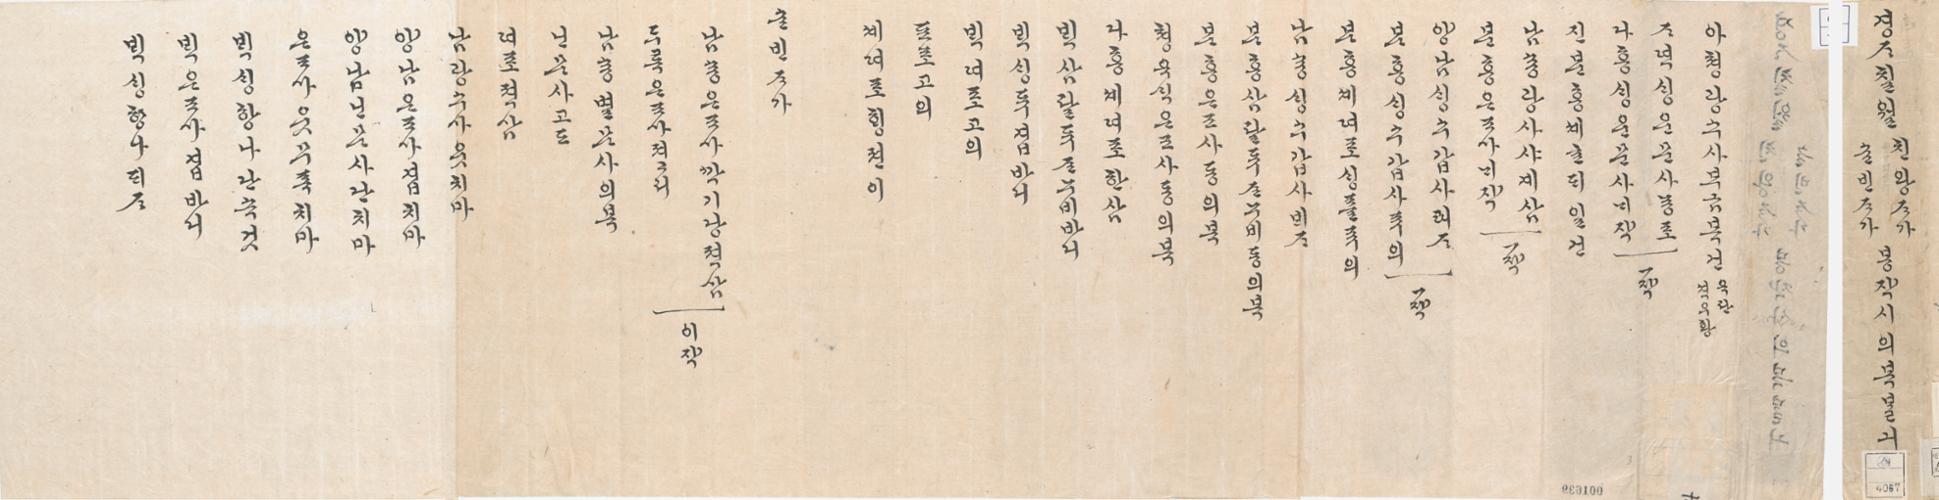 1_1900년 7월 영친왕·순빈 봉작 시 의복 발기.jpg